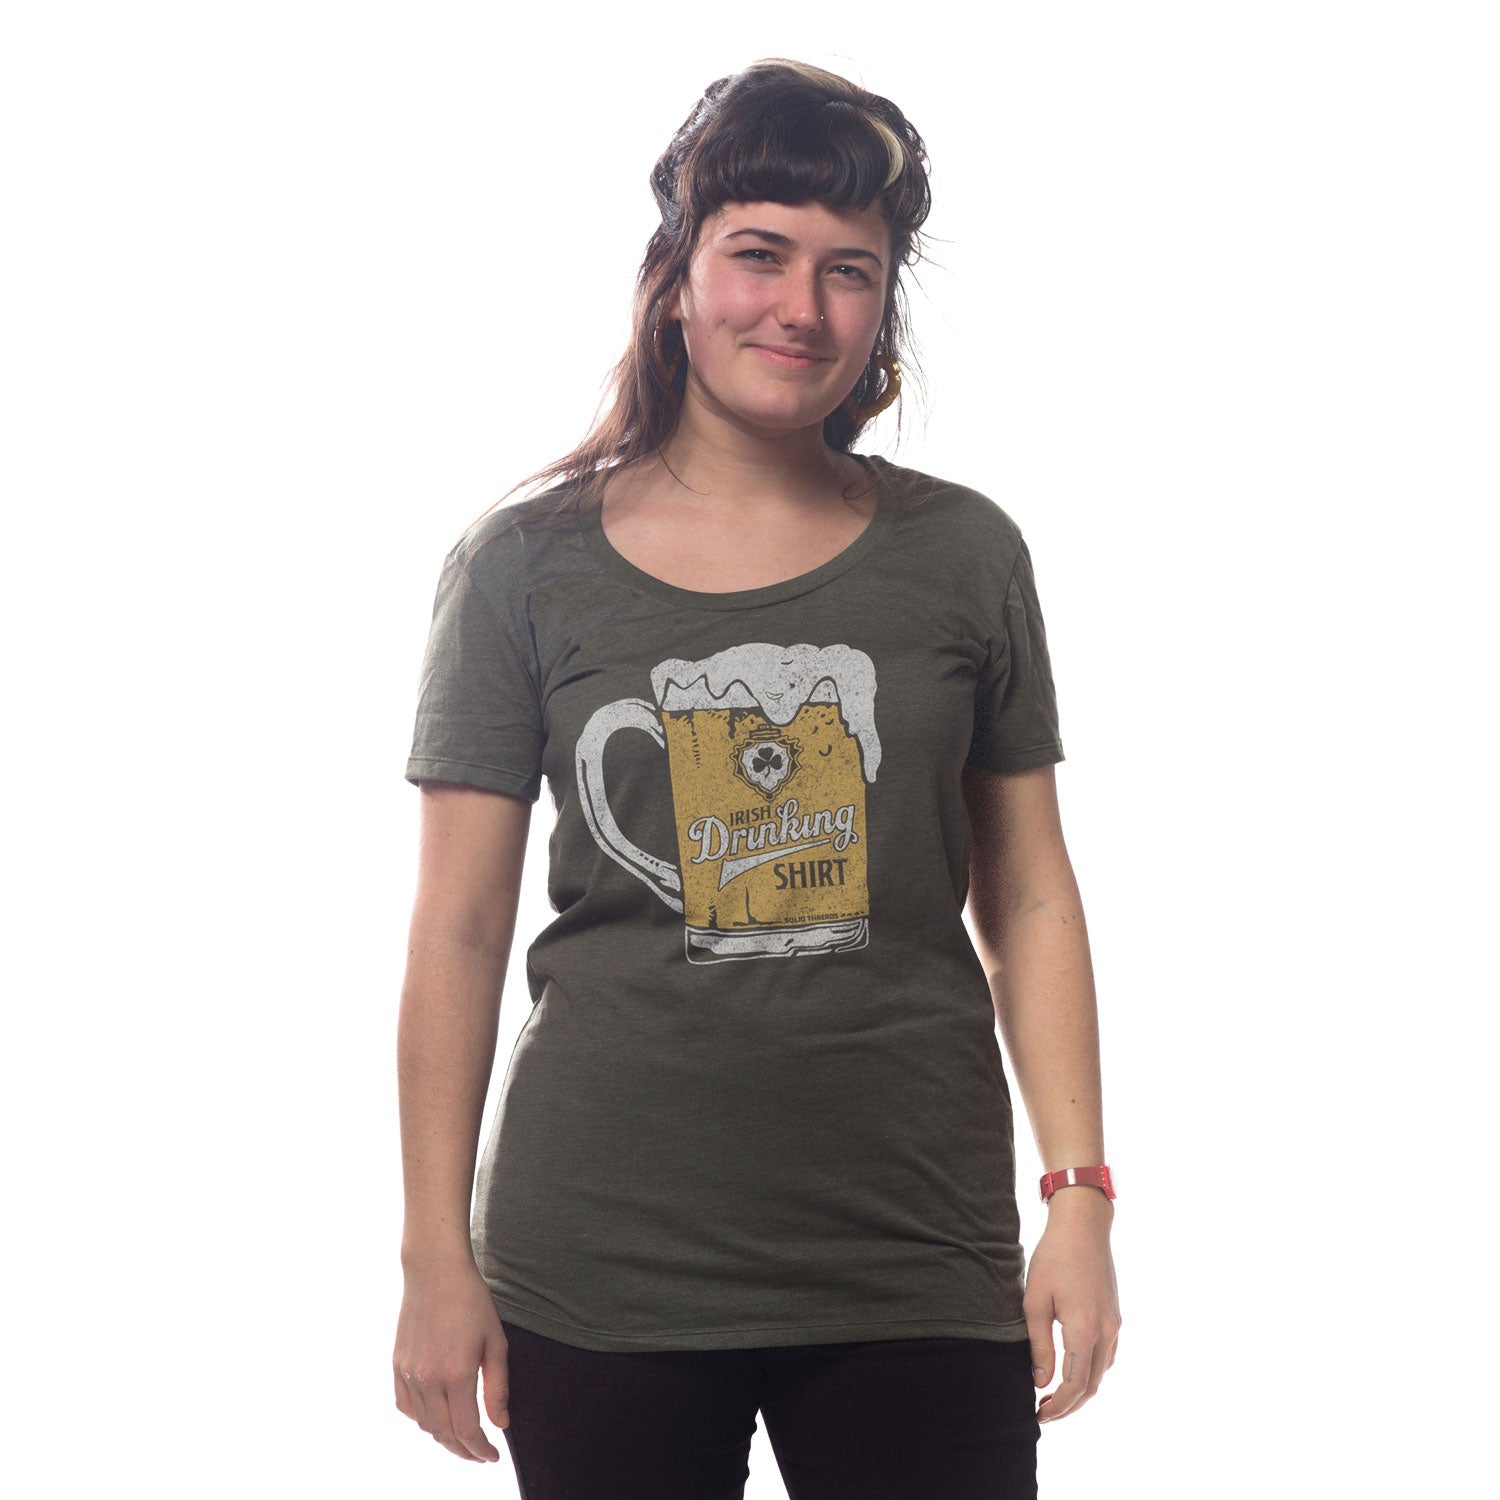 Women's Irish Drinking Shirt T-shirt